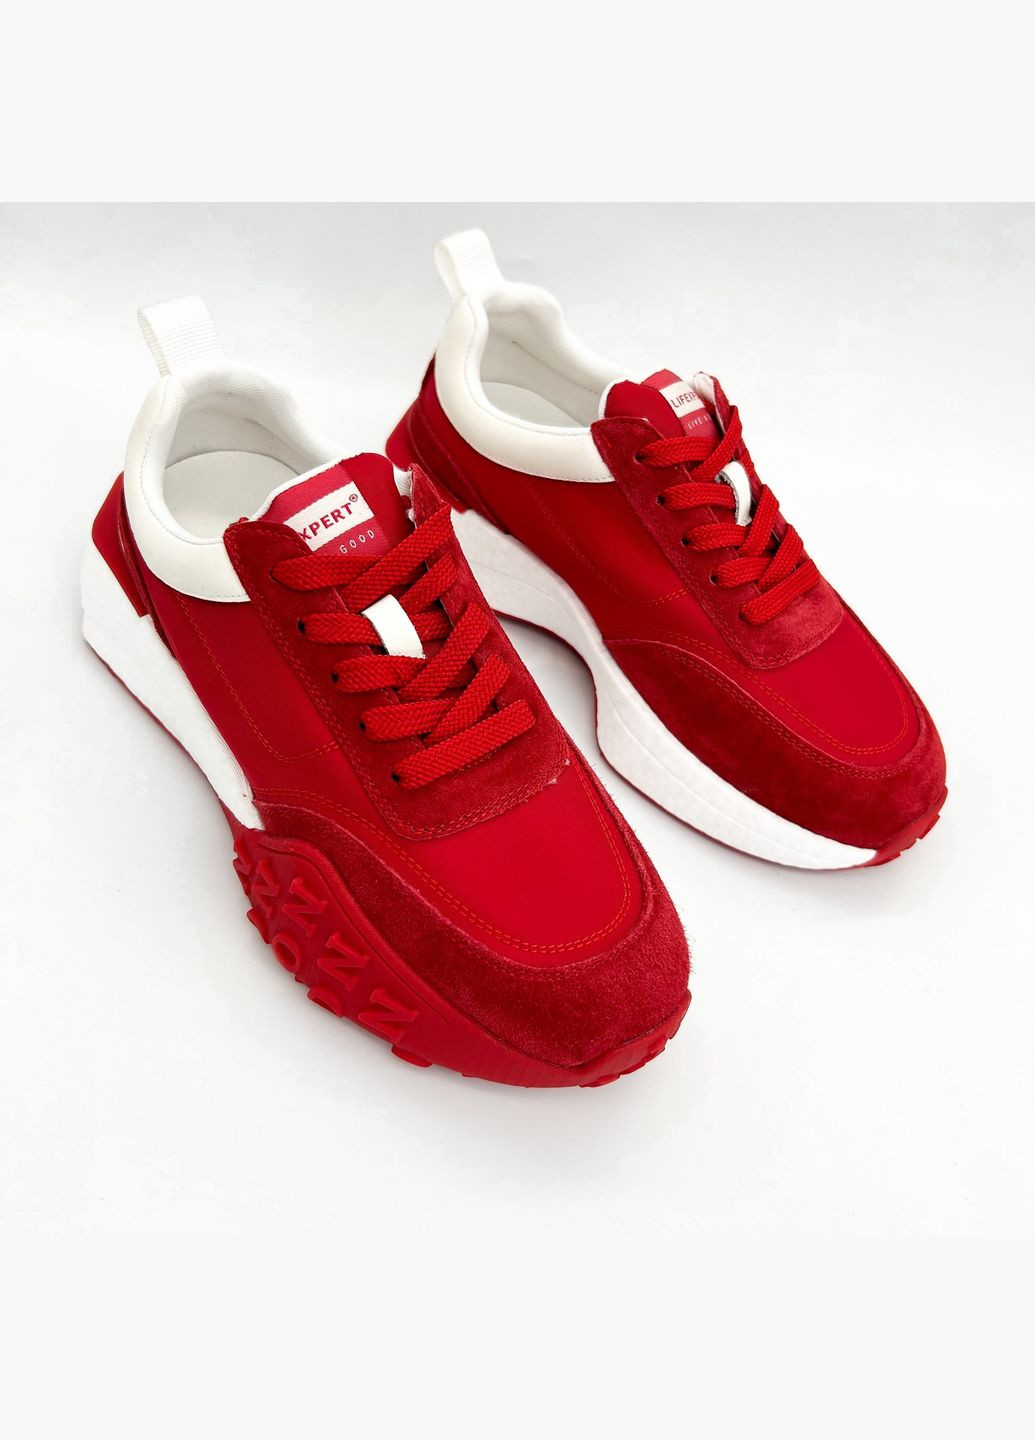 Червоні всесезонні кросівки (р) текстиль/замша 0-1-1-a-44-2331 Lifexpert